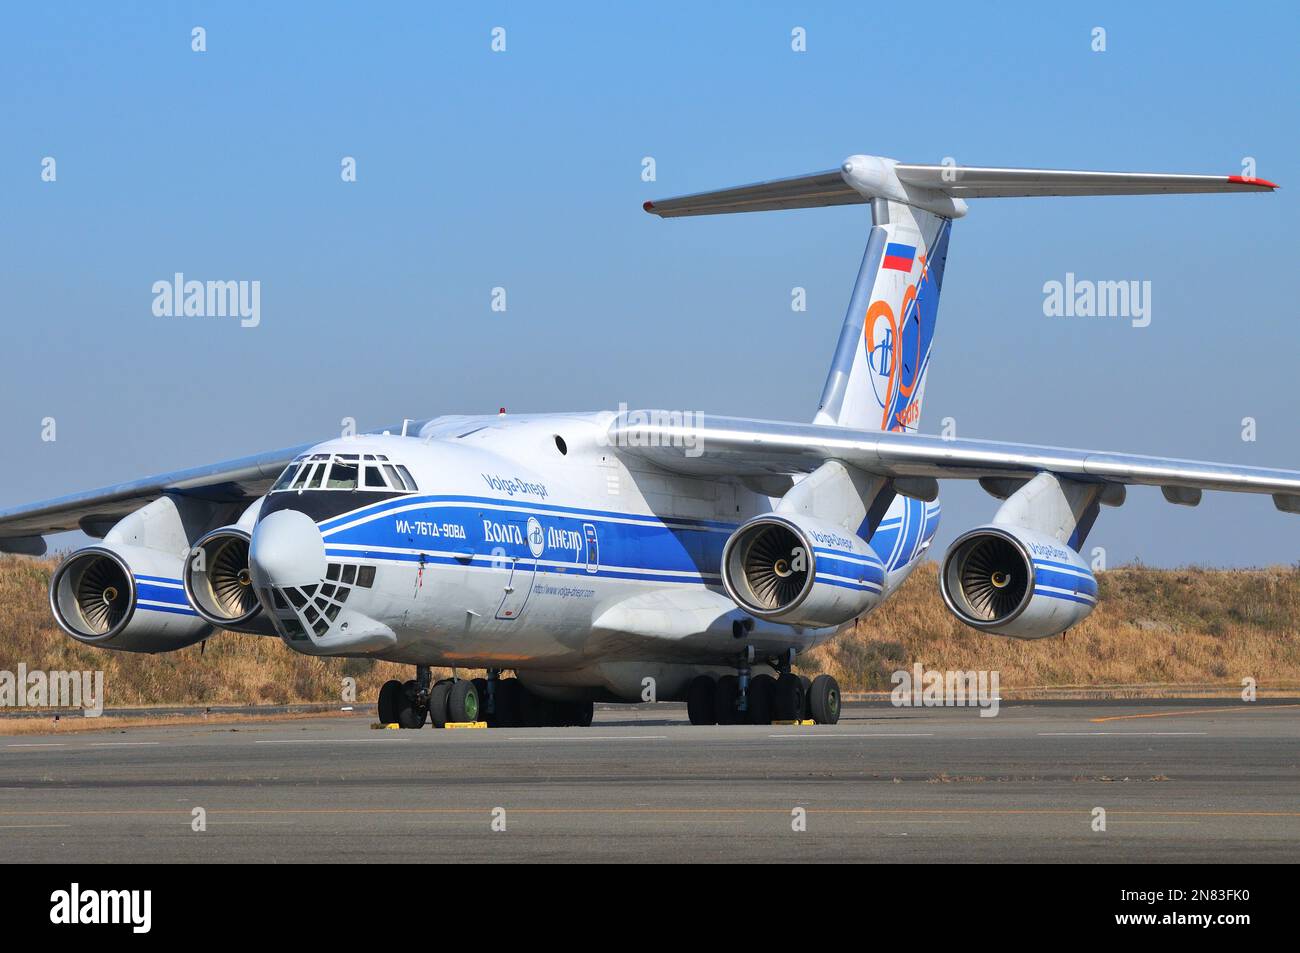 Tokyo, Japon - 01 décembre 2013: Volga-Dnepr Airlines Ilyushin IL76-90VD transporteur aérien stratégique et tactique franc. Banque D'Images